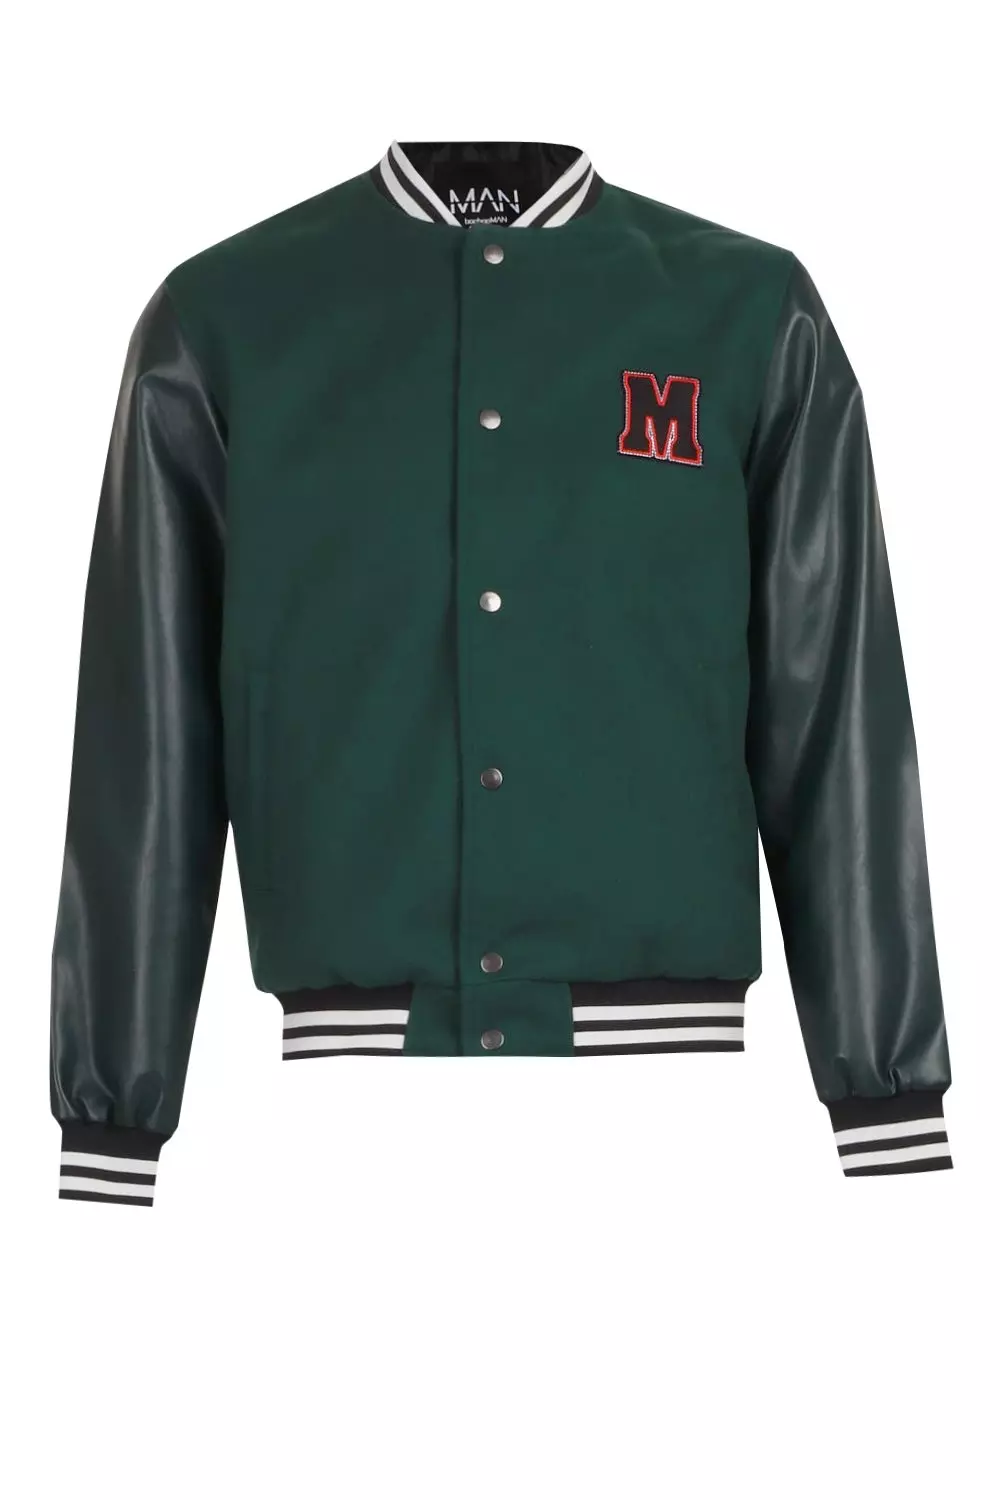 CenturyX Men Vintage Varsity Bomber Jacket Letter Print Baseball Jacket  Button Long Sleeve Bomber Jacket Coat Retro Sweatshirt Green XXL 